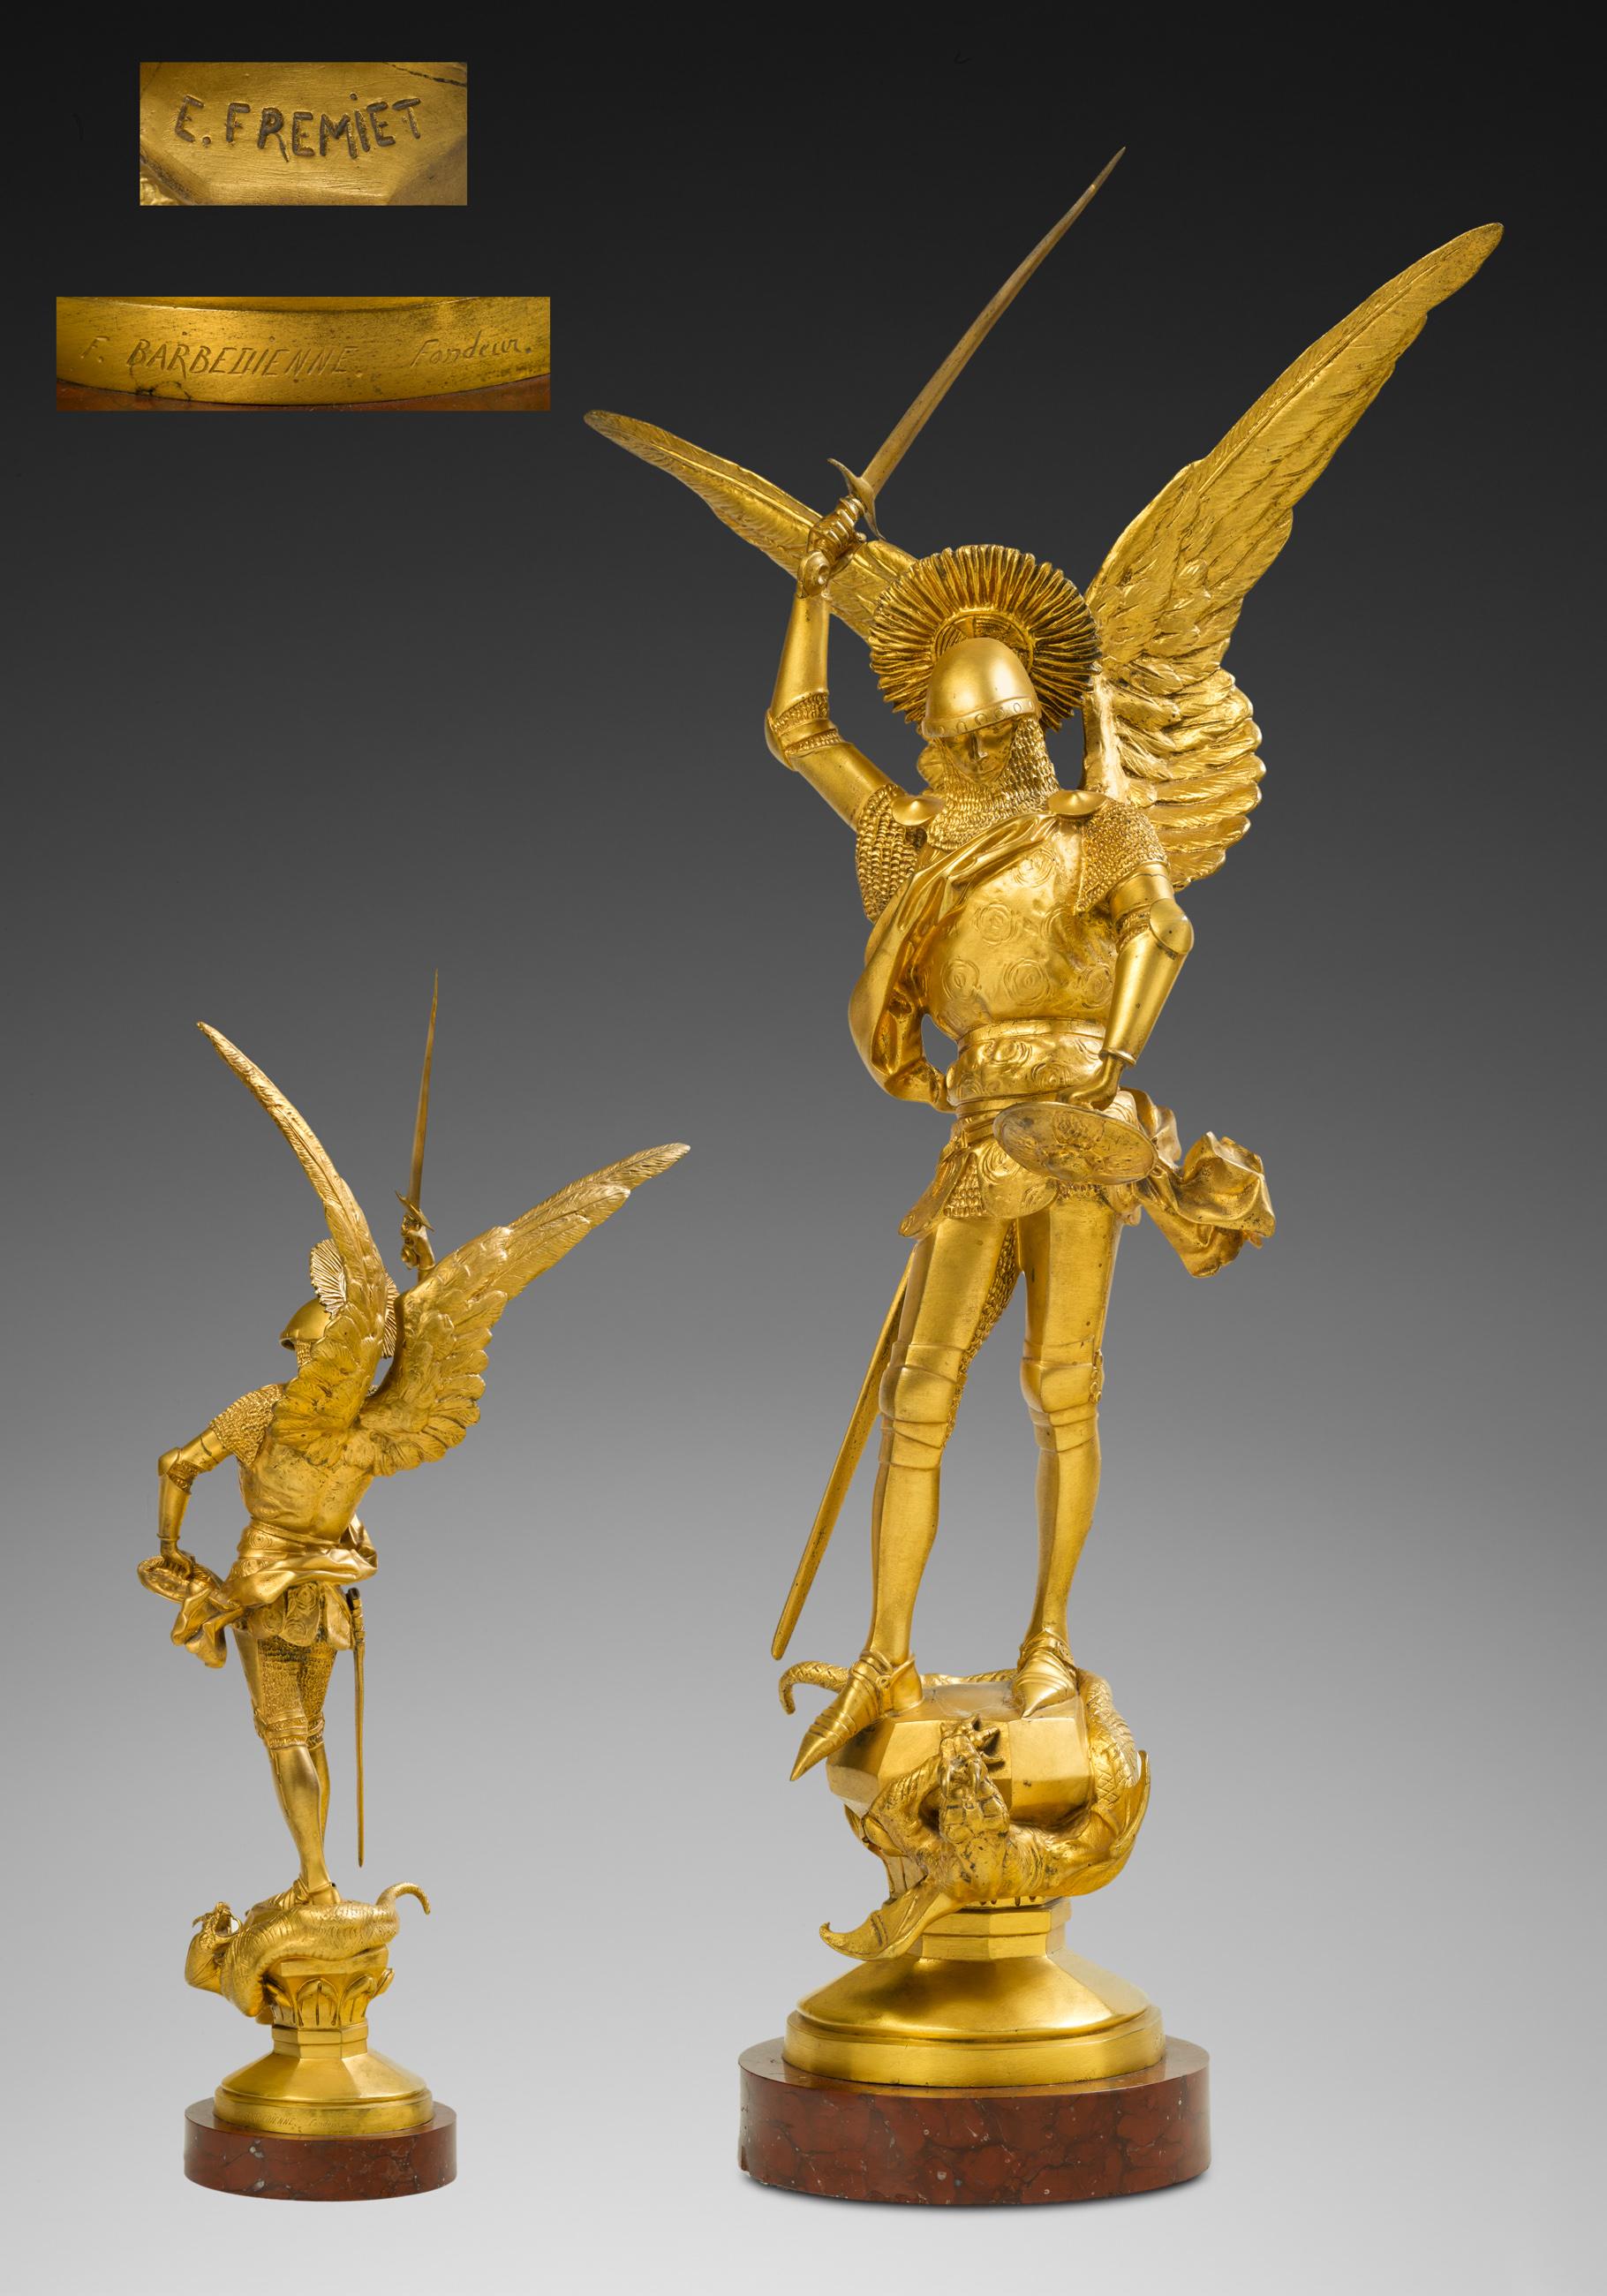 Figurative Sculpture Emmanuel Fremiet - Saint Michel et le dragon